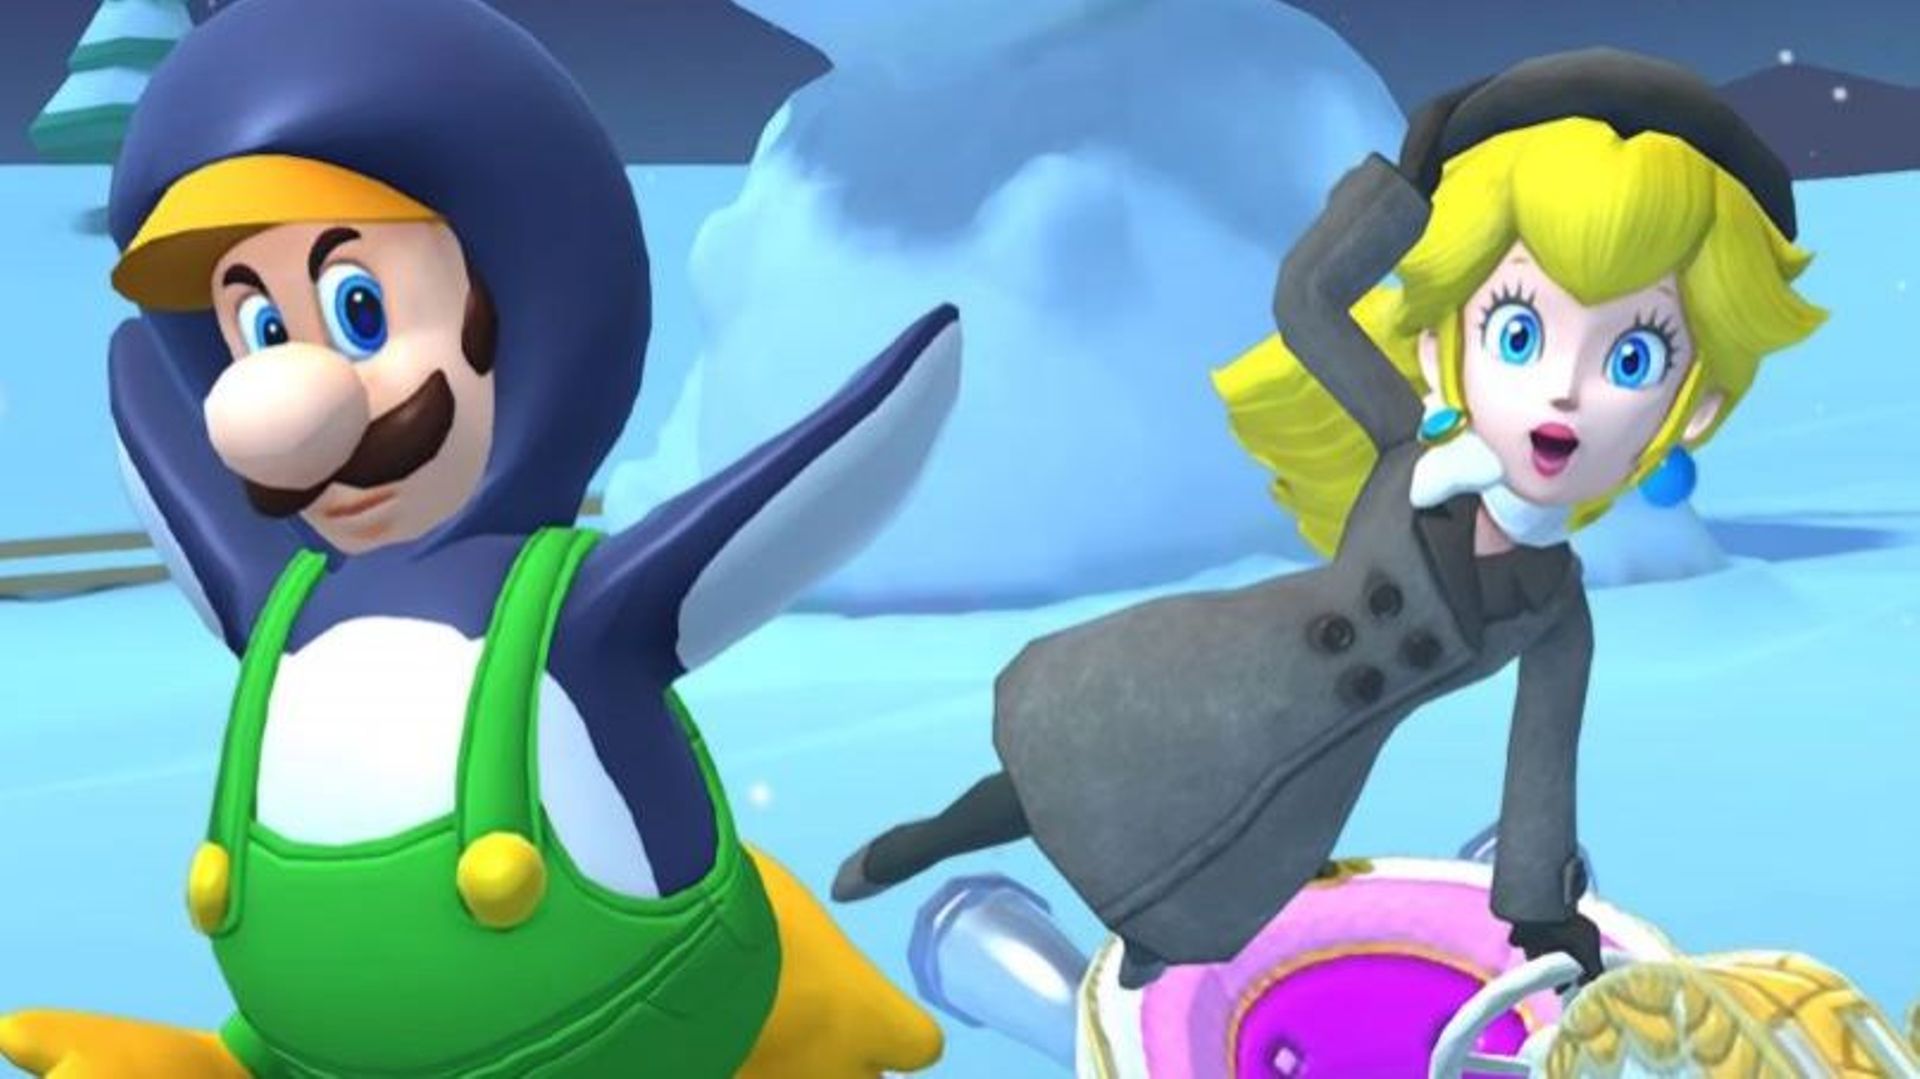 Un vent glacé souffle sur la franchise mobile de Nintendo : un nouveau trailer montrant la mise à jour Ice Tour permet de découvrir Luigi, Peach et Mario en train de glisser sur un circuit glacé.